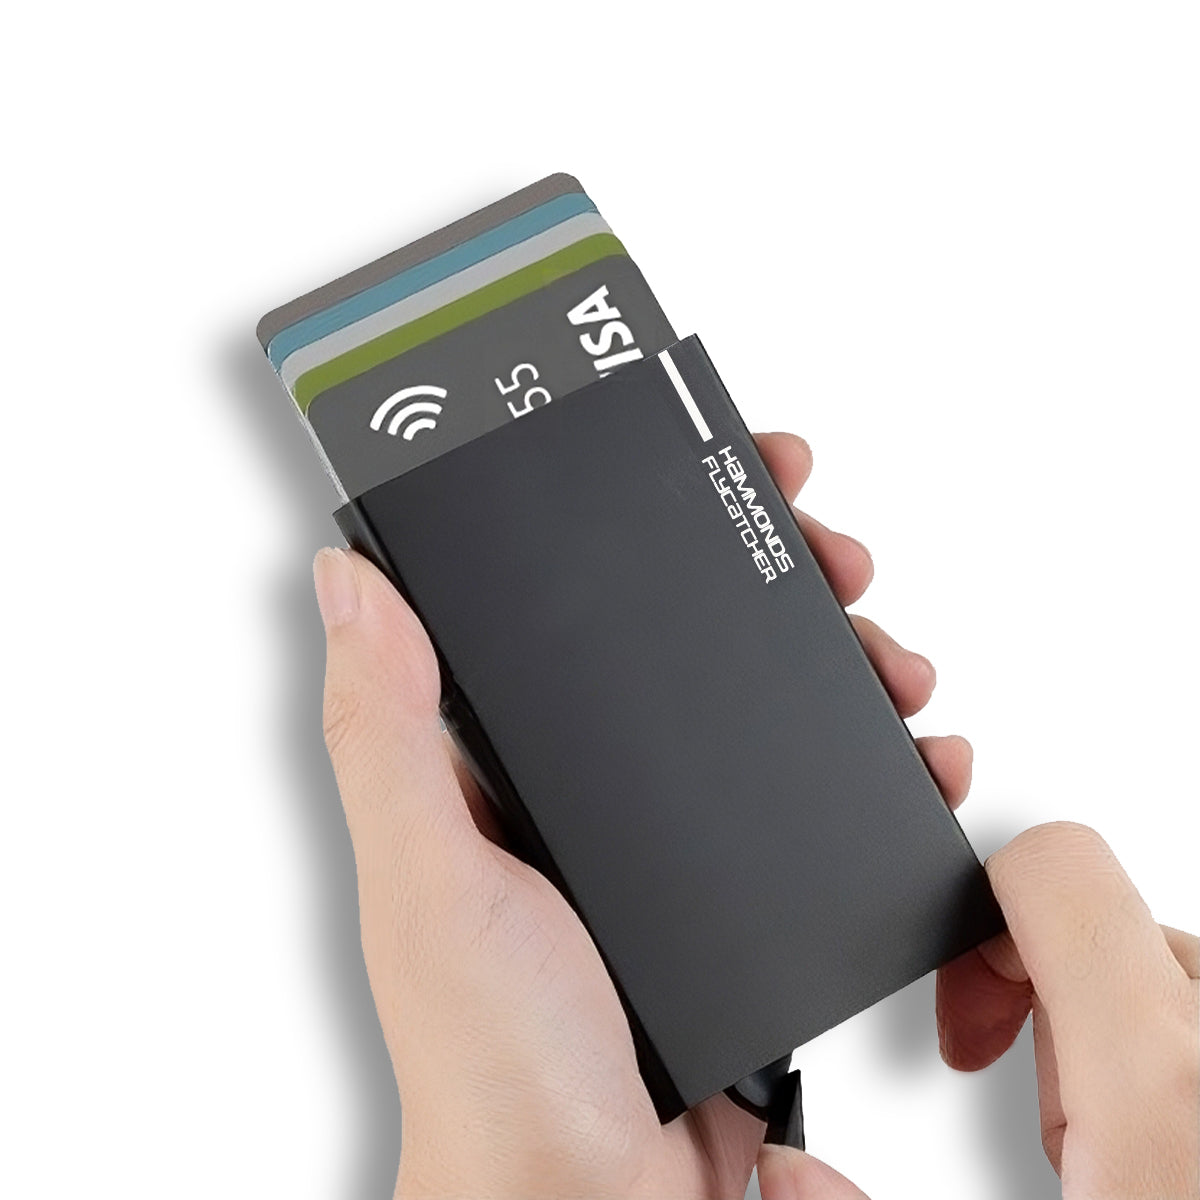 ATM Debit/Credit Card Holder for Men and Women - Aluminum Metal RFID Protected Smart Pop-Up Card Holder Wallet for Men